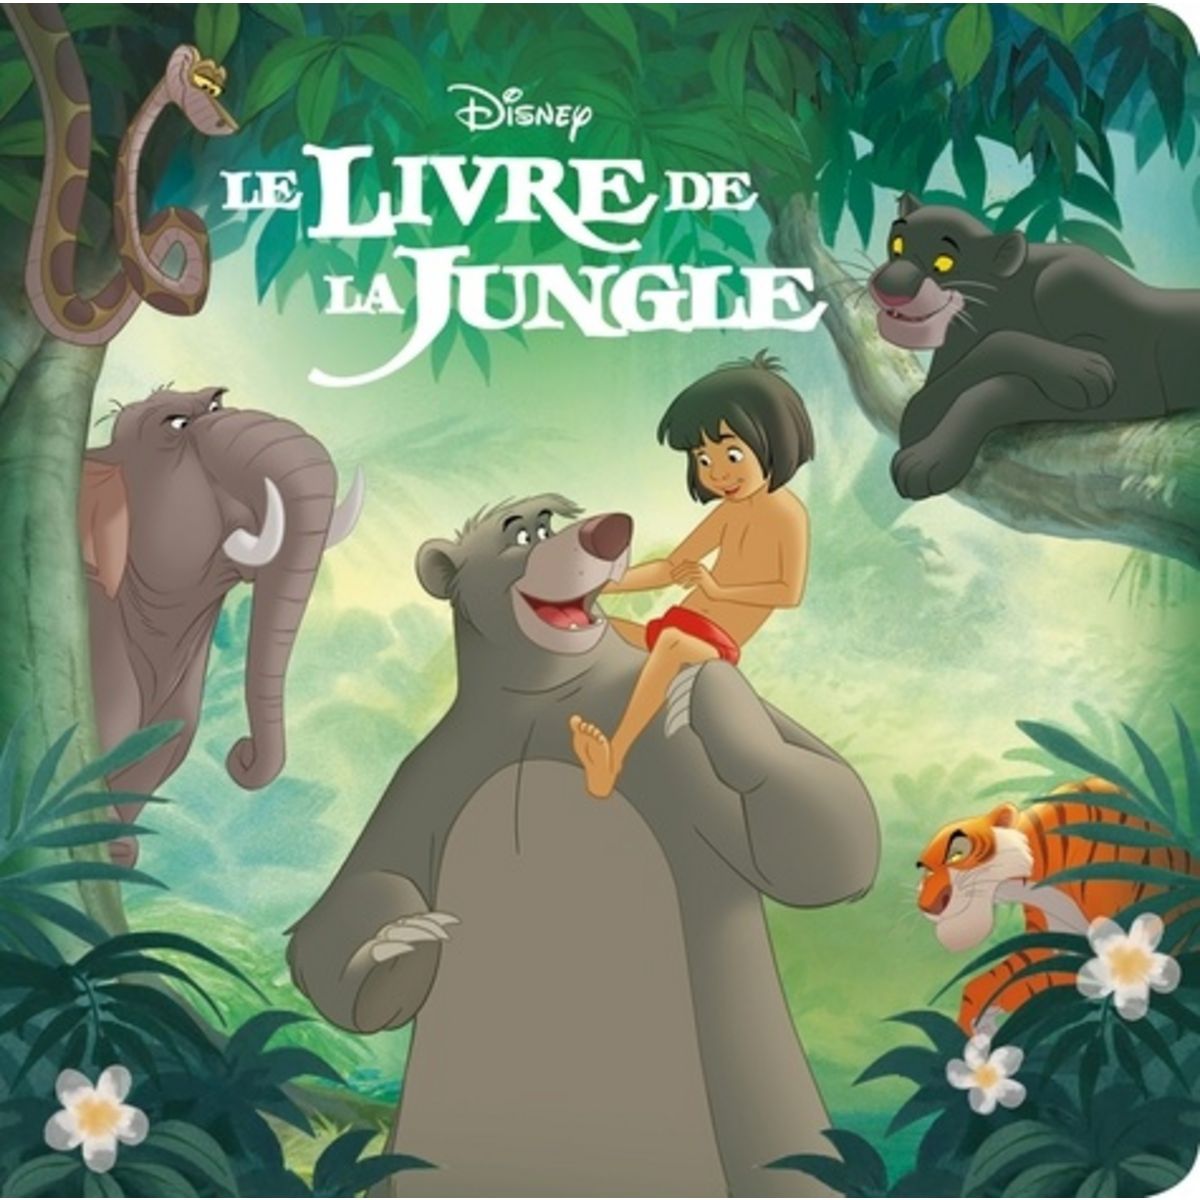 Le livre de la jungle : Le classique de Disney reviendra dimanche